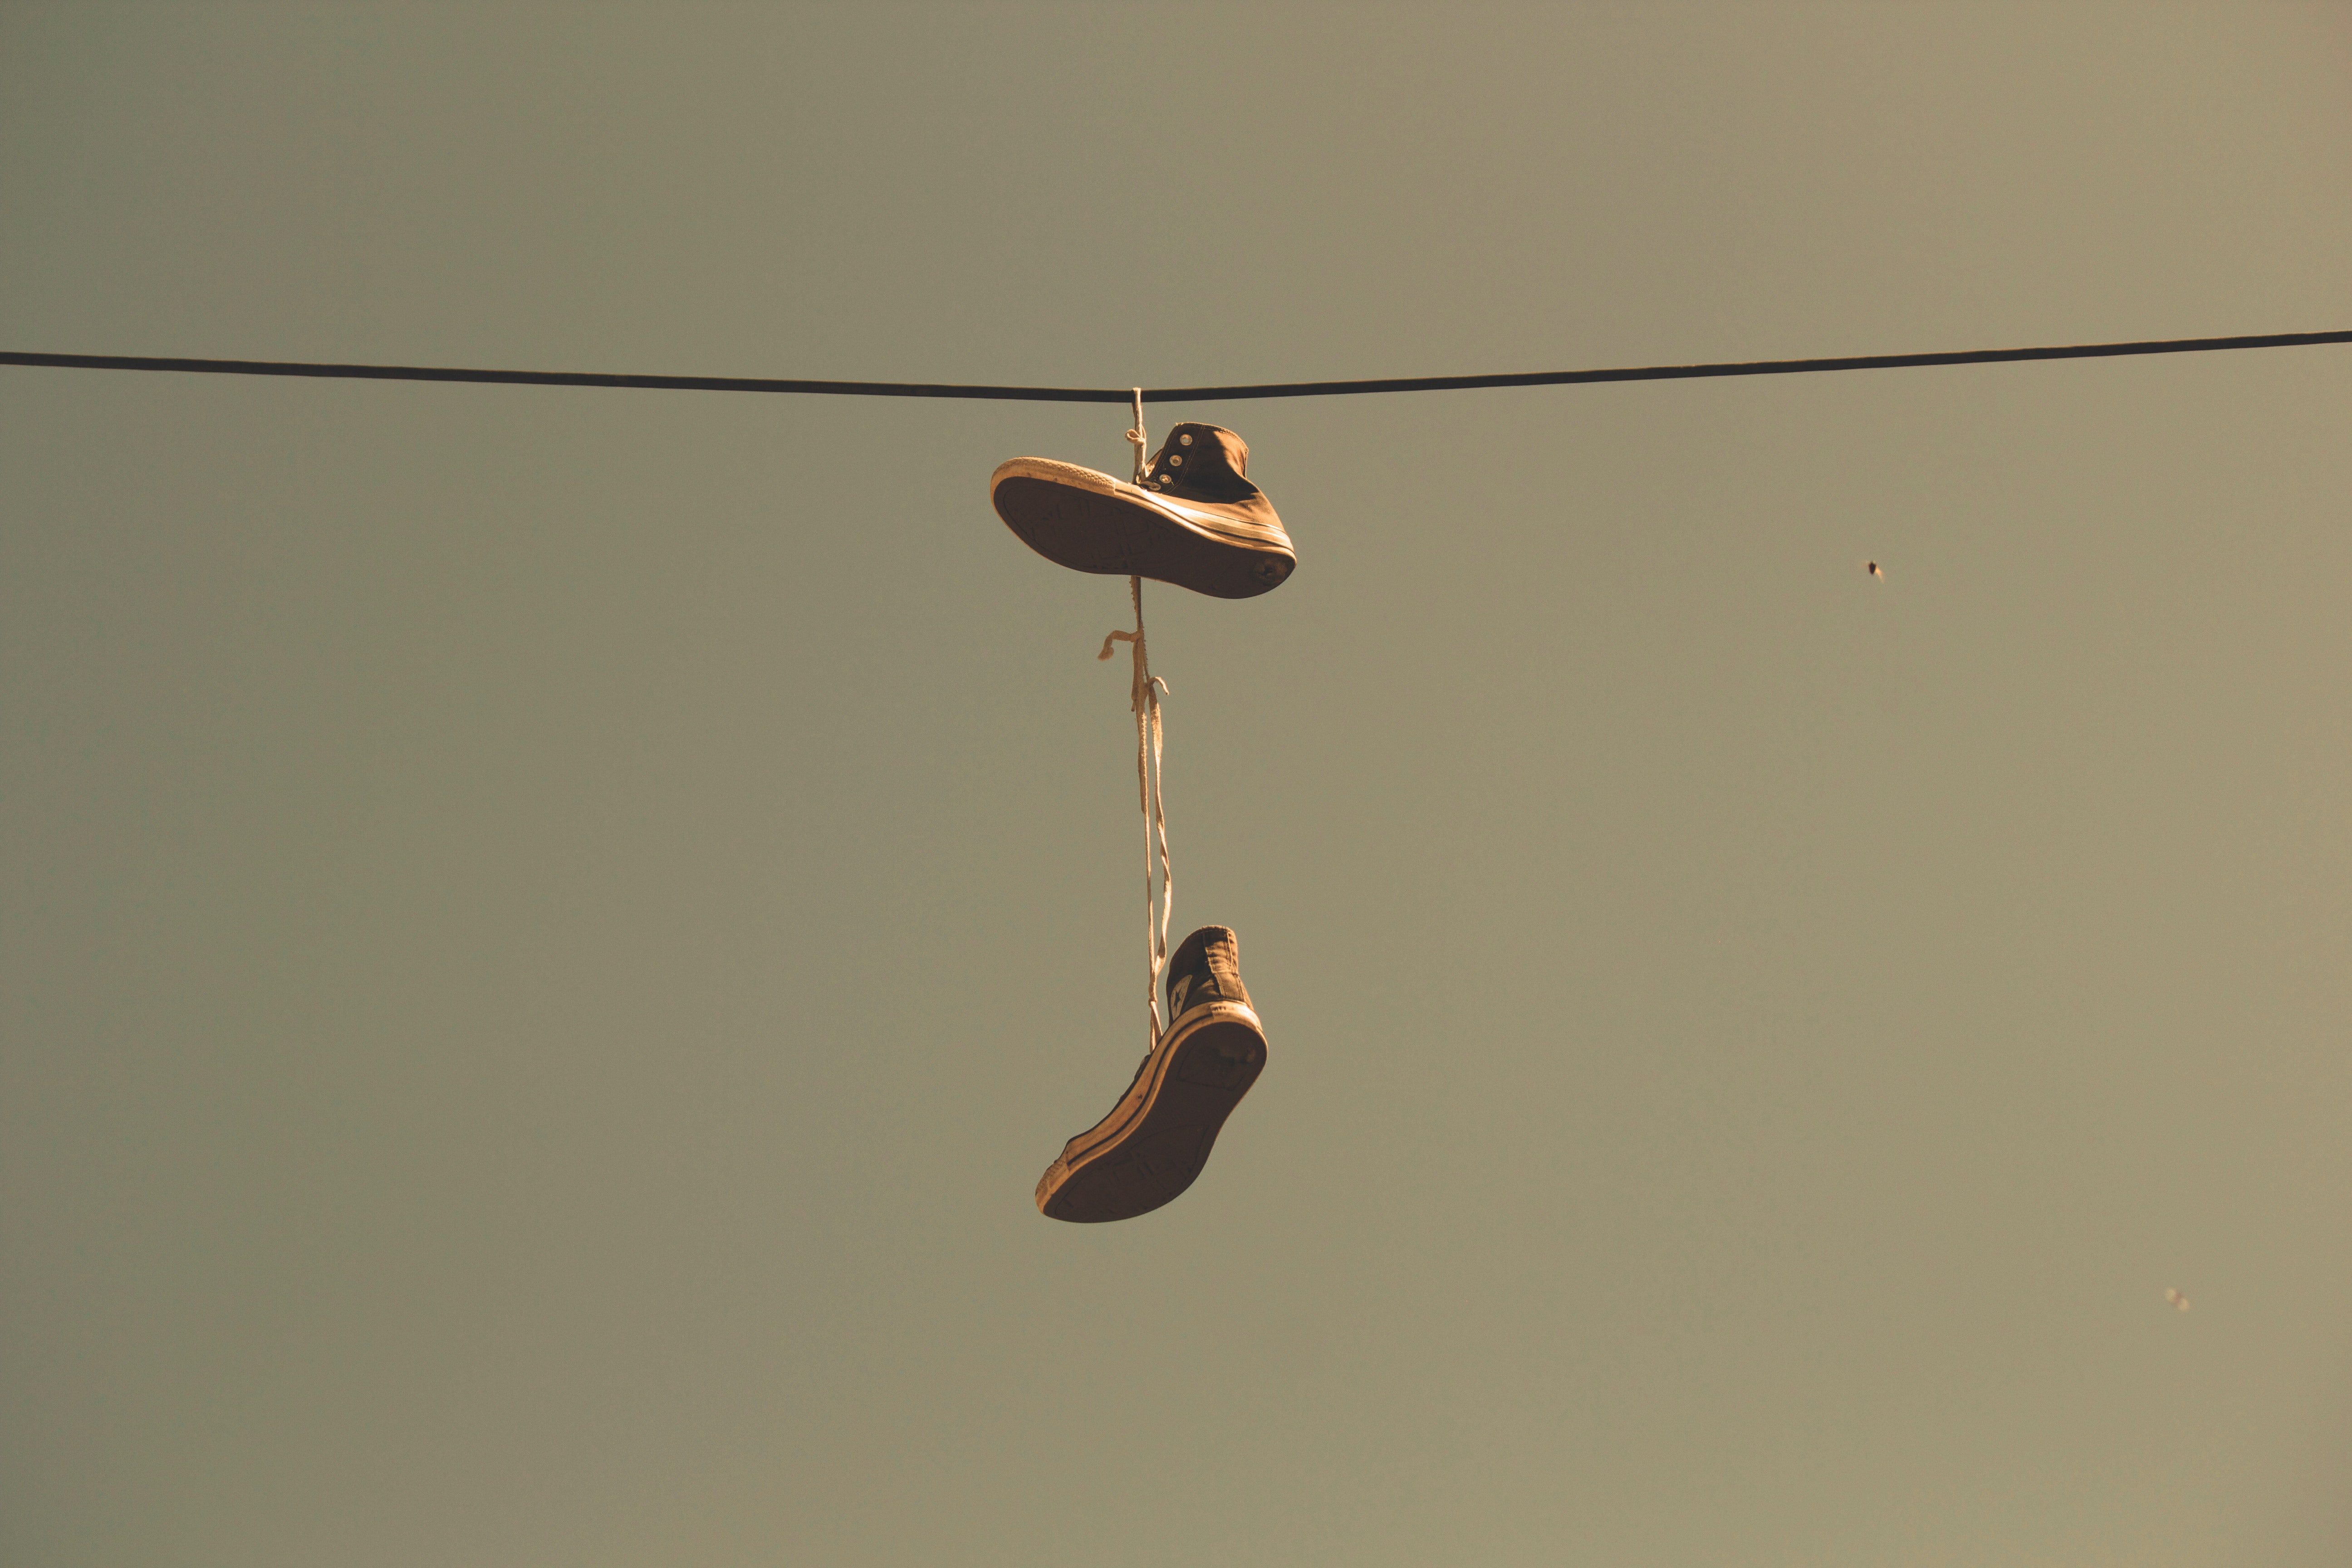 Twee sneakers hangen aan een kabel in de lucht